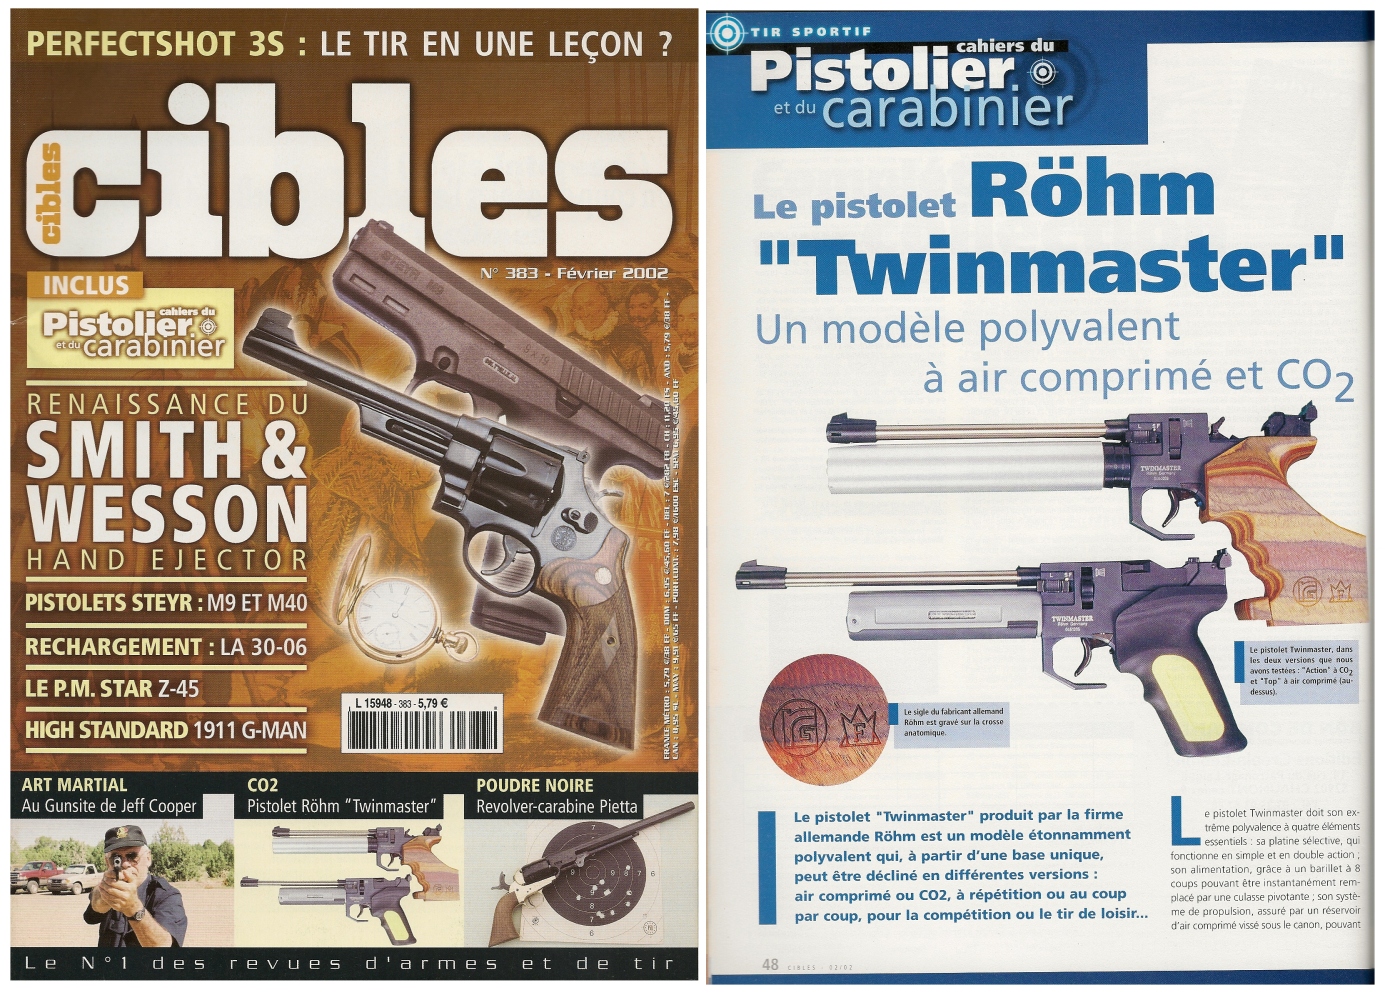 Le banc d’essai du pistolet Röhm Twinmaster a été publié sur 3 pages ½ dans le magazine Cibles n°383 (février 2002)